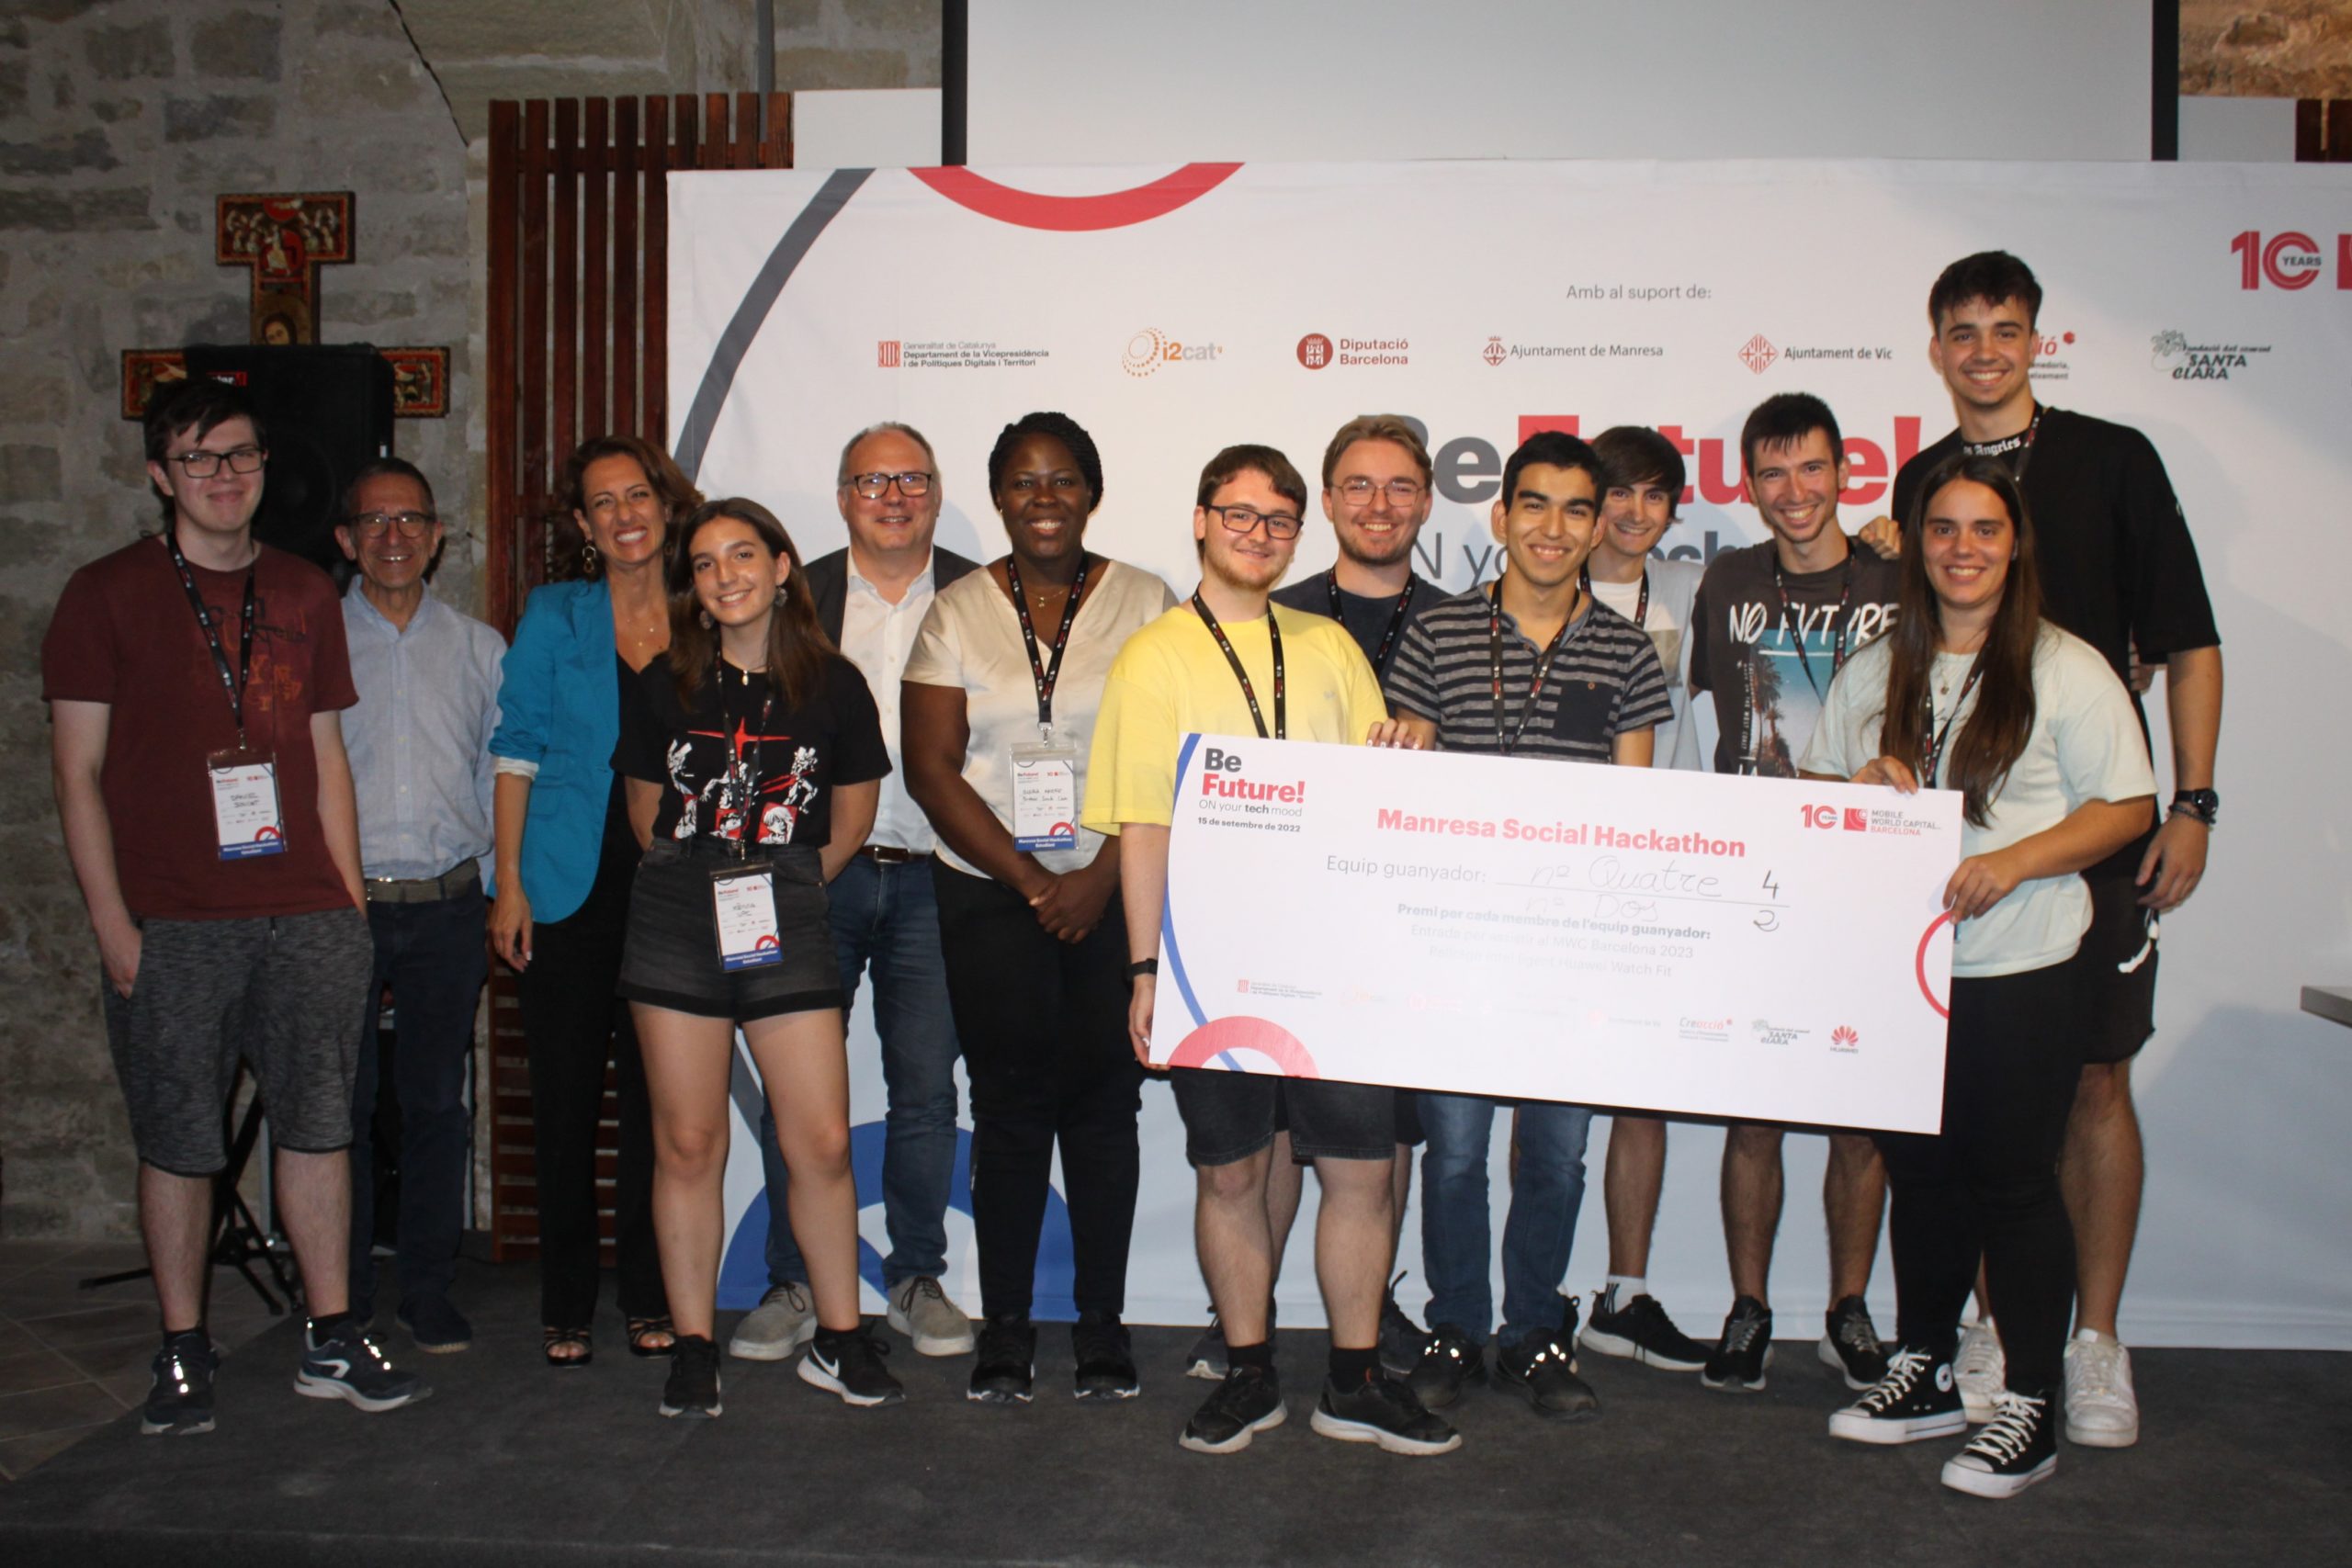 Els equips guanyadors de la ‘Manresa Social Hackathon’ reben un premi de 1.500€ per desenvolupar les seves solucions